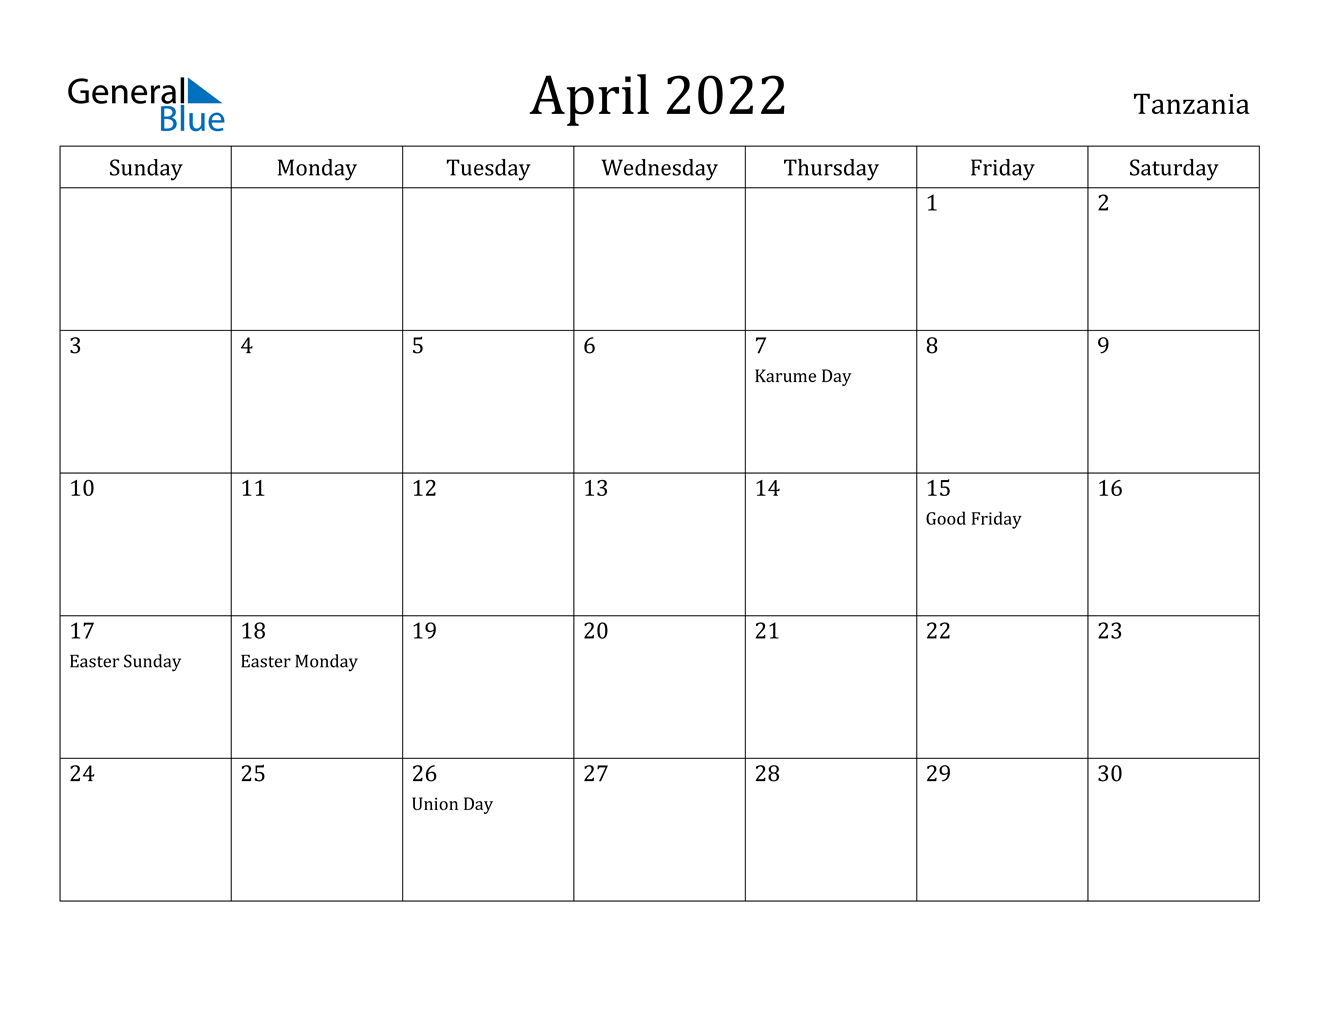 April 2022 Calendar - Tanzania